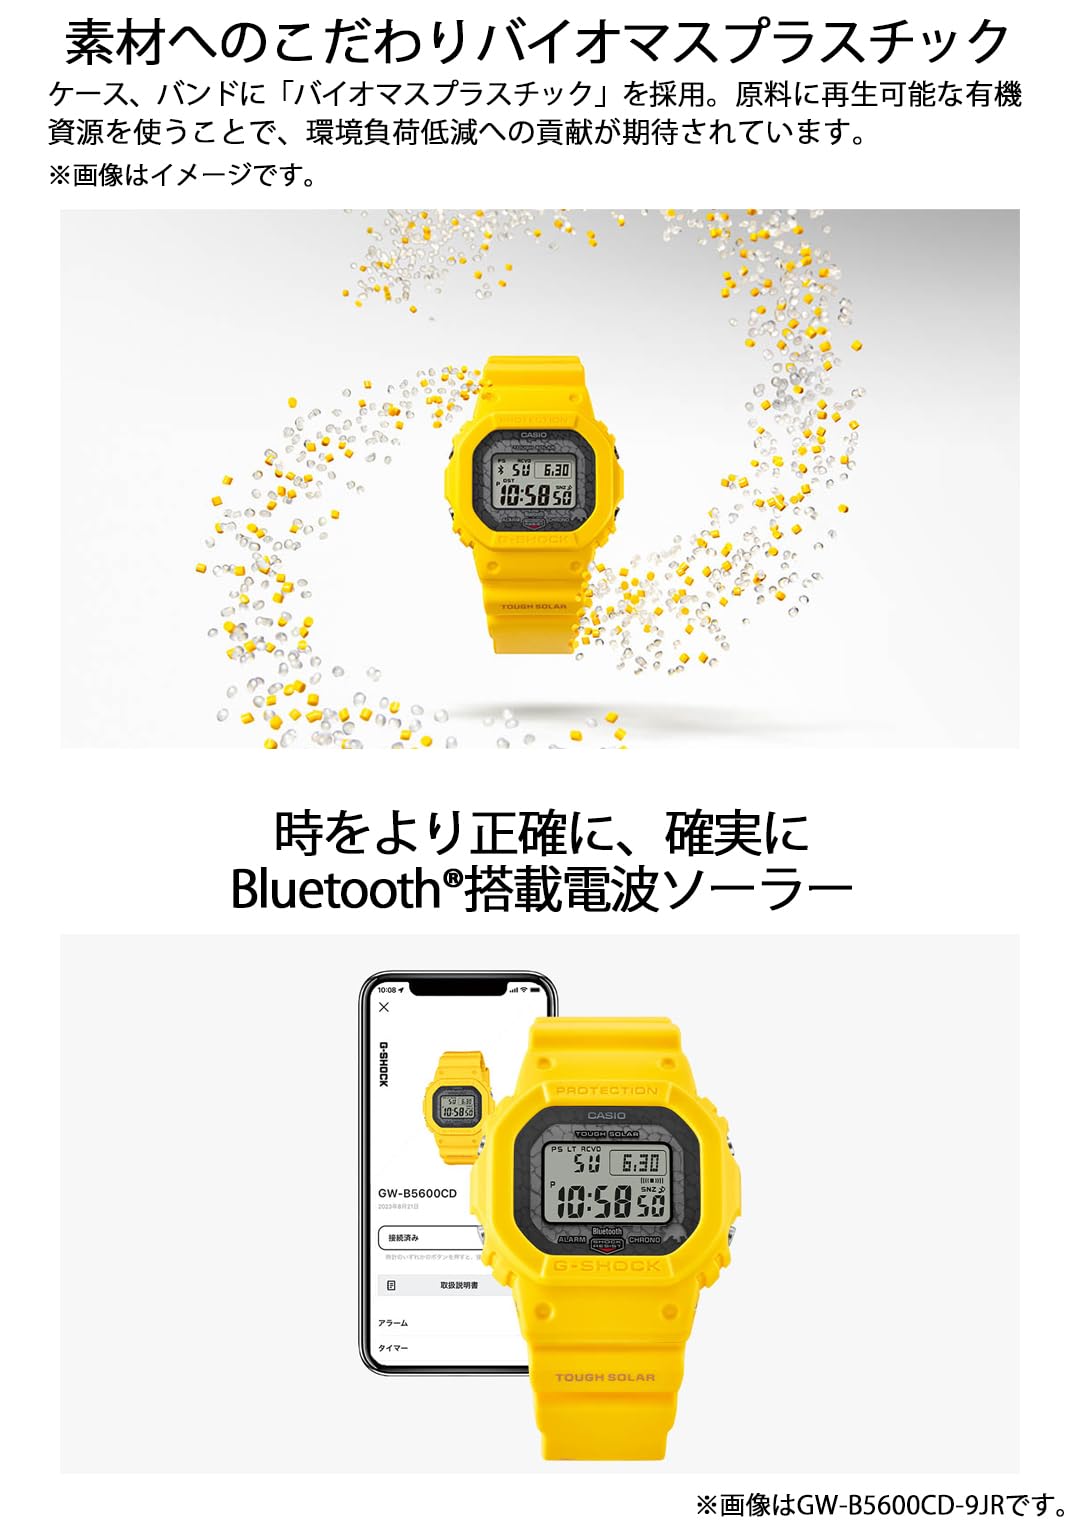 ジーショック [カシオ] 腕時計 【国内正規品】チャールズ・ダーウィン財団コラボレーションモデル Bluetooth搭載 バイオマスプラスチック採用 GW-B5600CD-1A2JR メンズ ブラック - BanzaiHobby